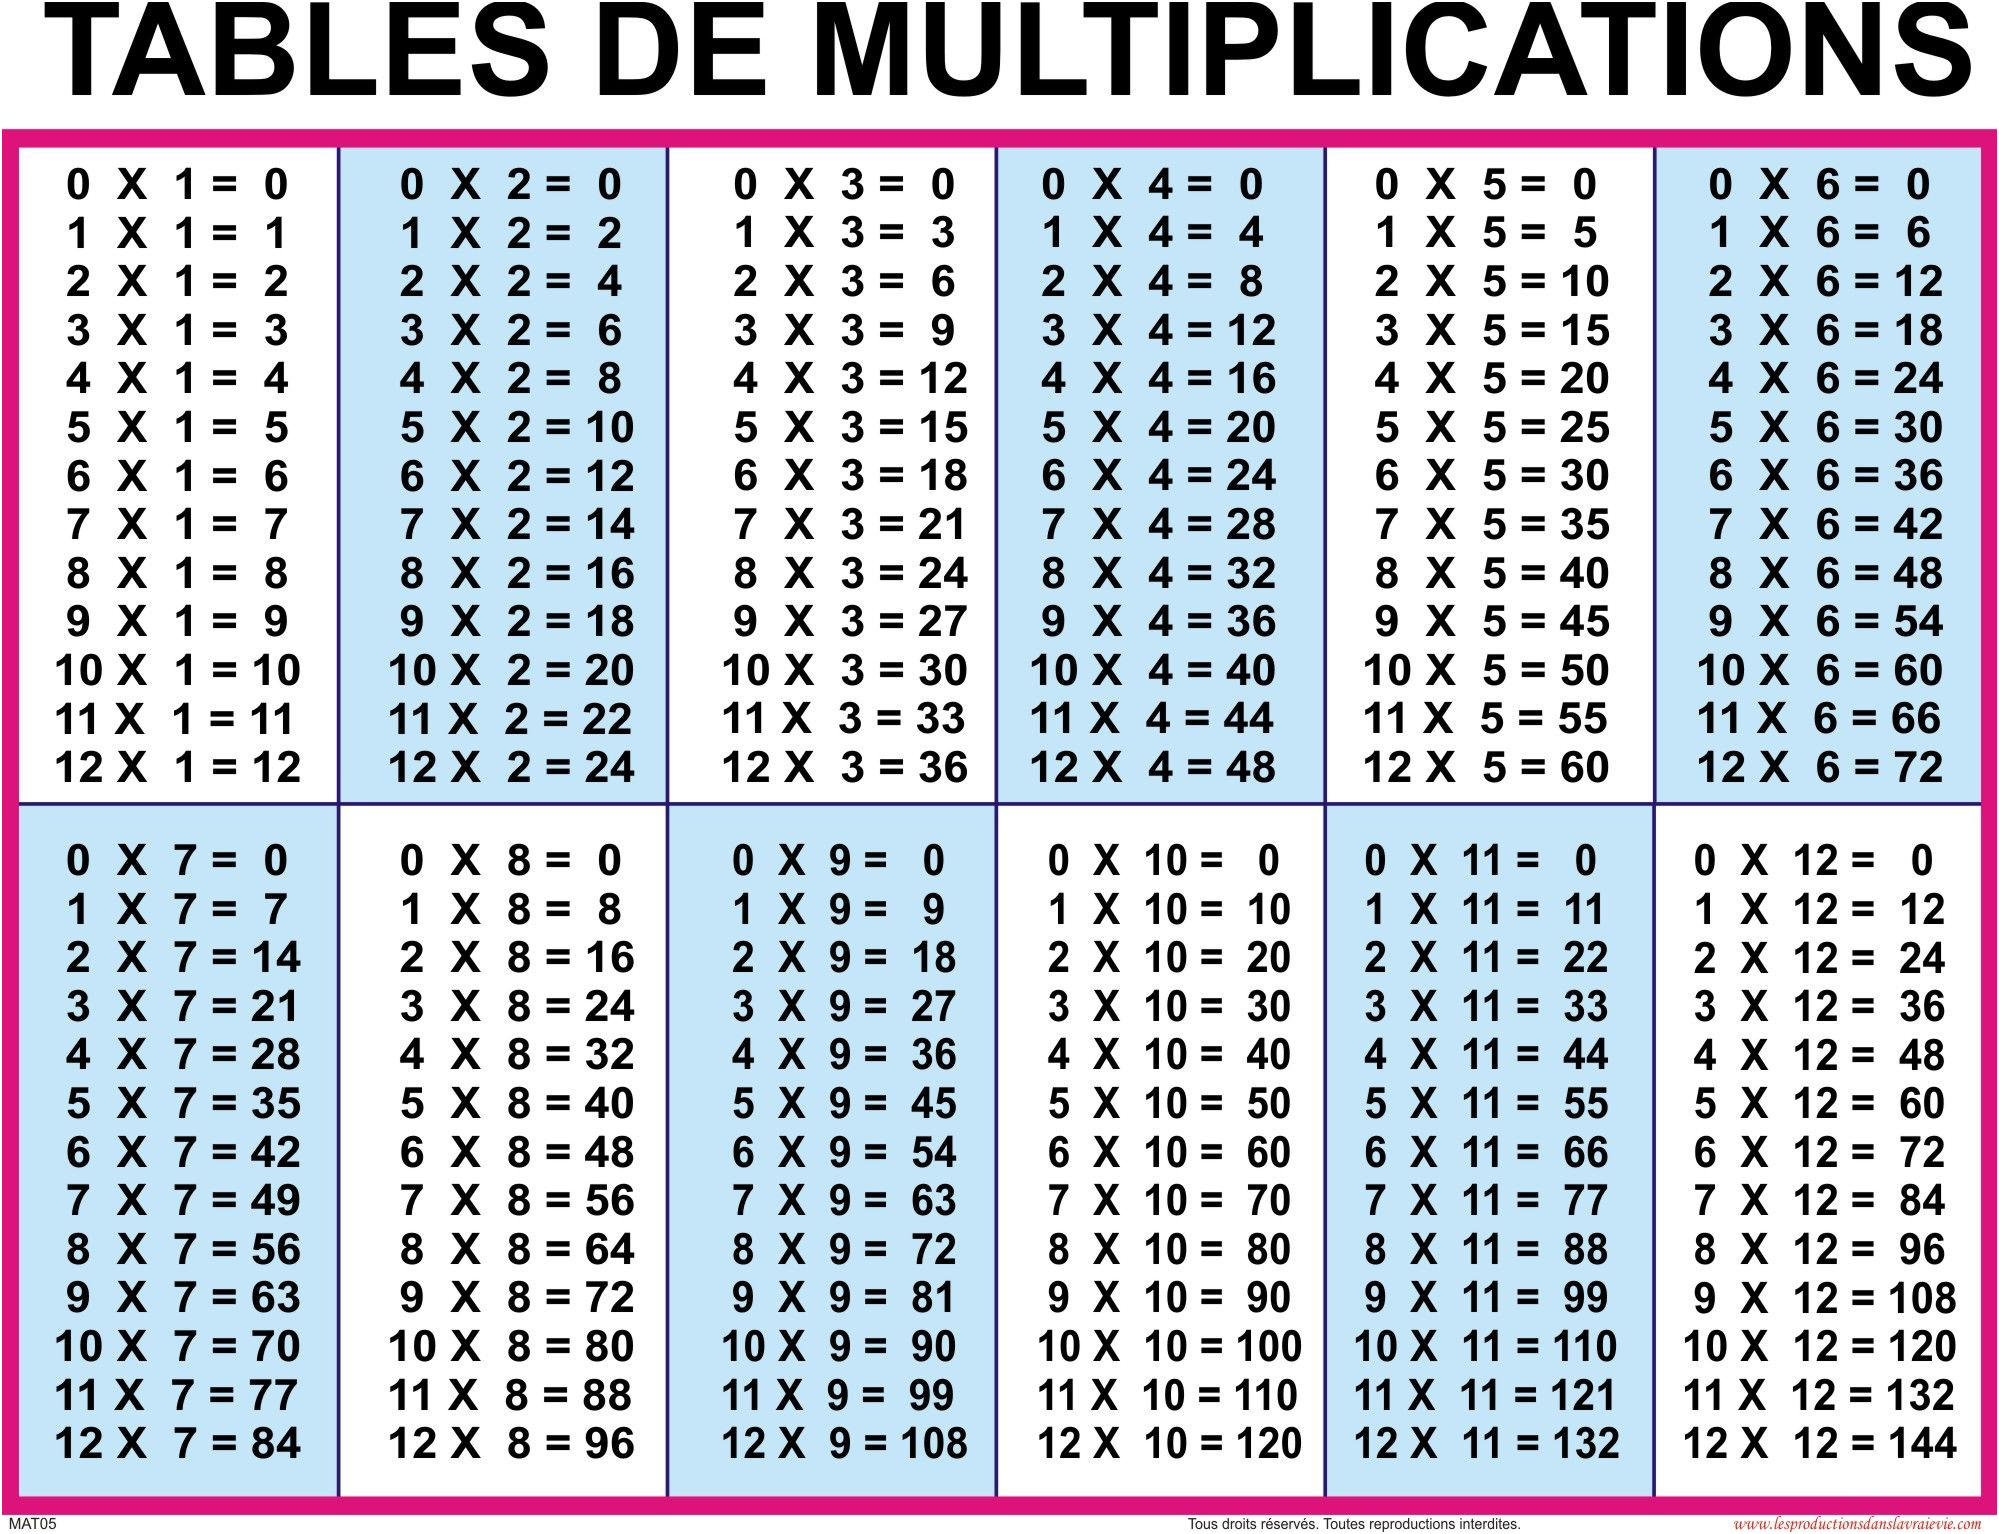 20 умножить на 6 8. Таблица умножения (1-20). Таблица умножения на 2 3 4. Таблица умножения Table. Таблица умножения от 1 до 12.